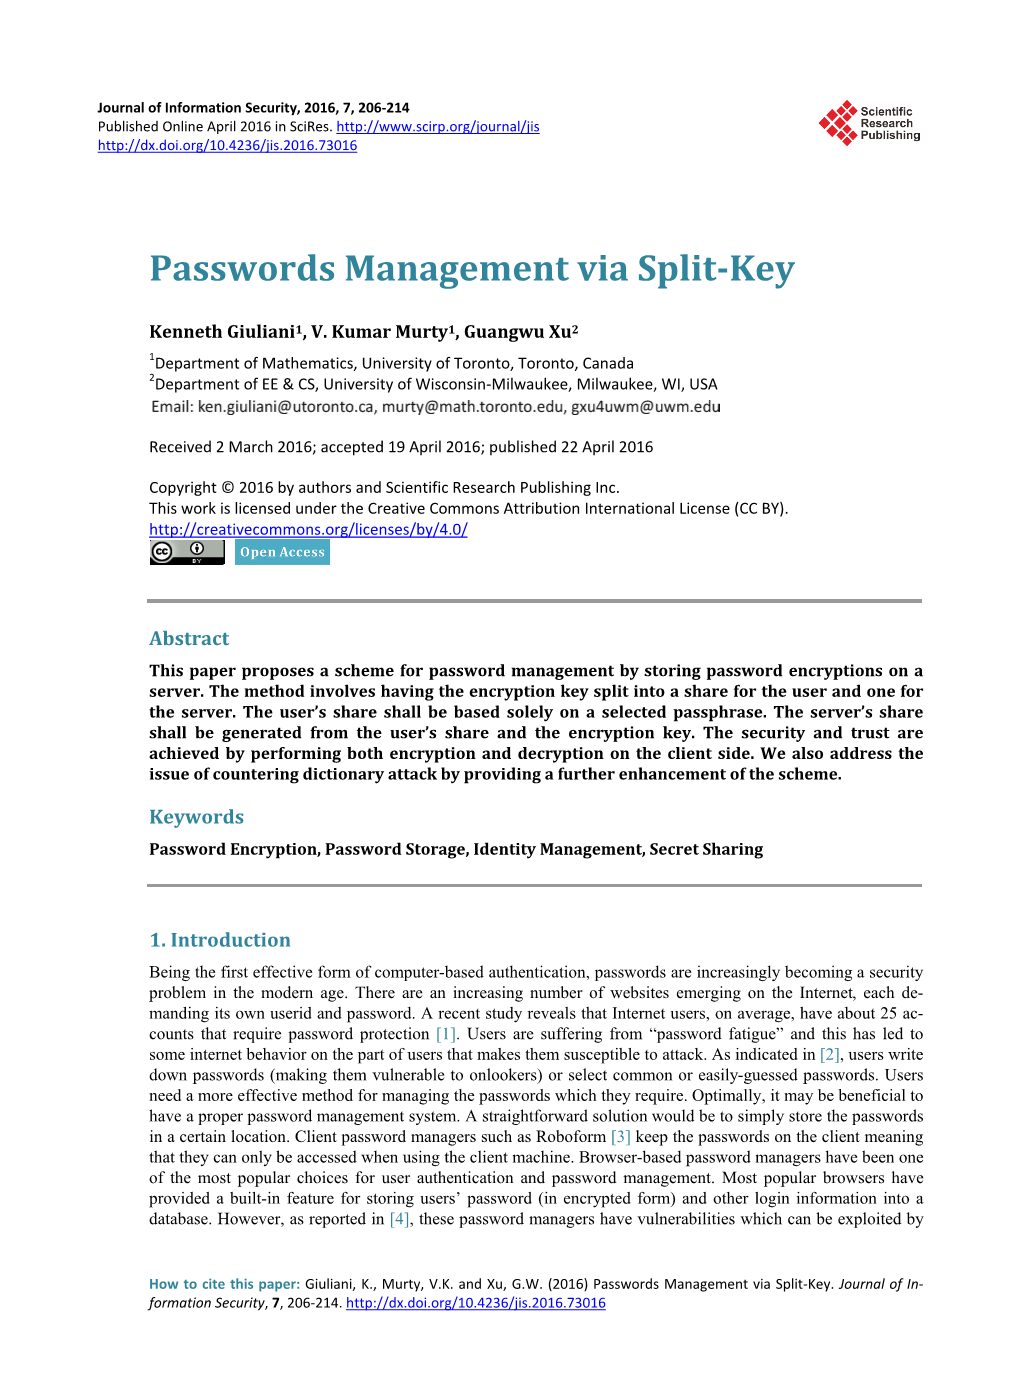 Passwords Management Via Split-Key